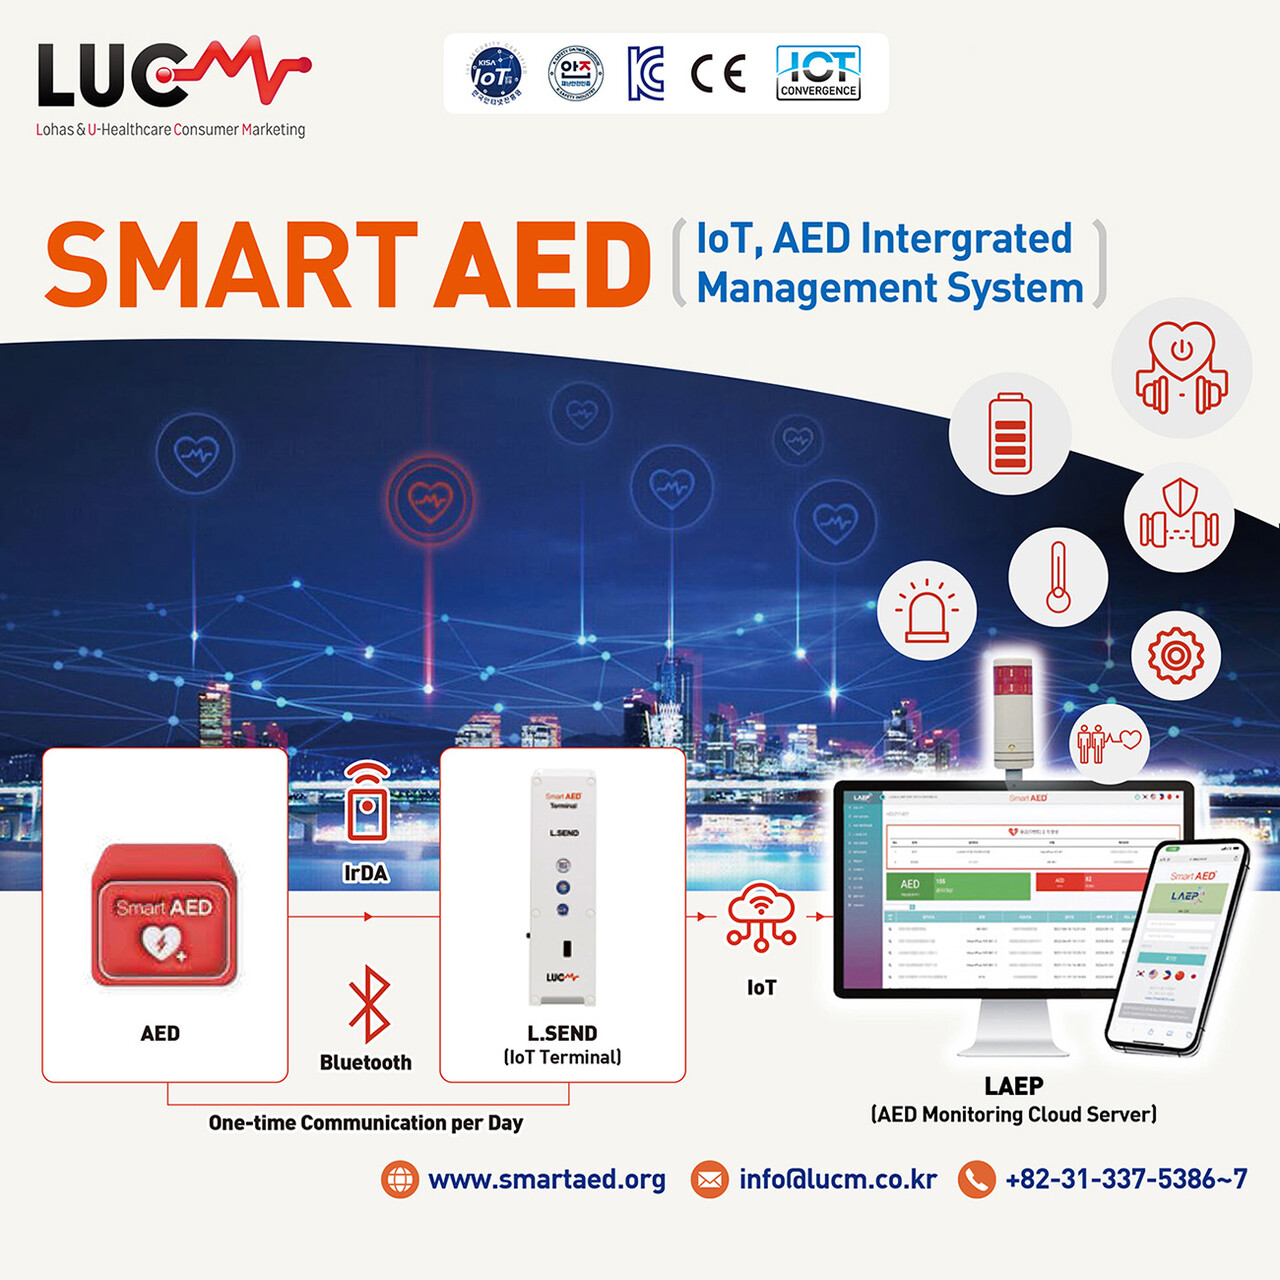 루씨엠의 ‘Smart AED 통합모니터링 장치 및 플랫폼’ 설명자료